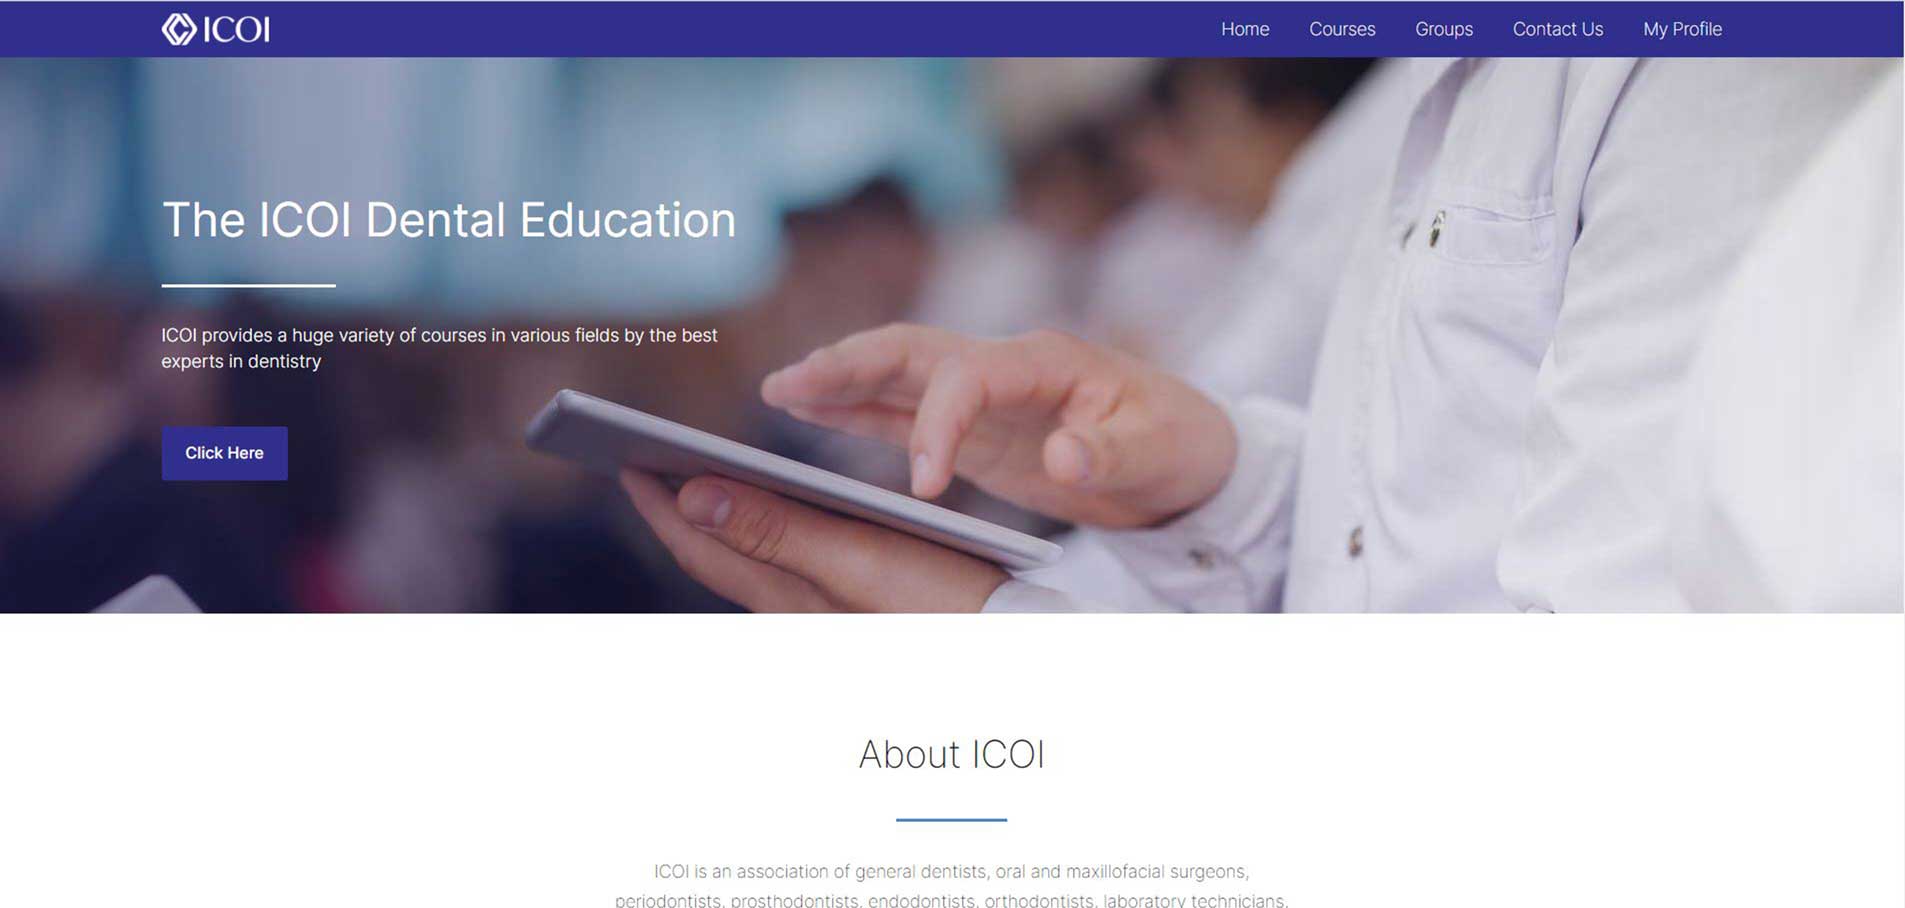 ICOI-campus website8